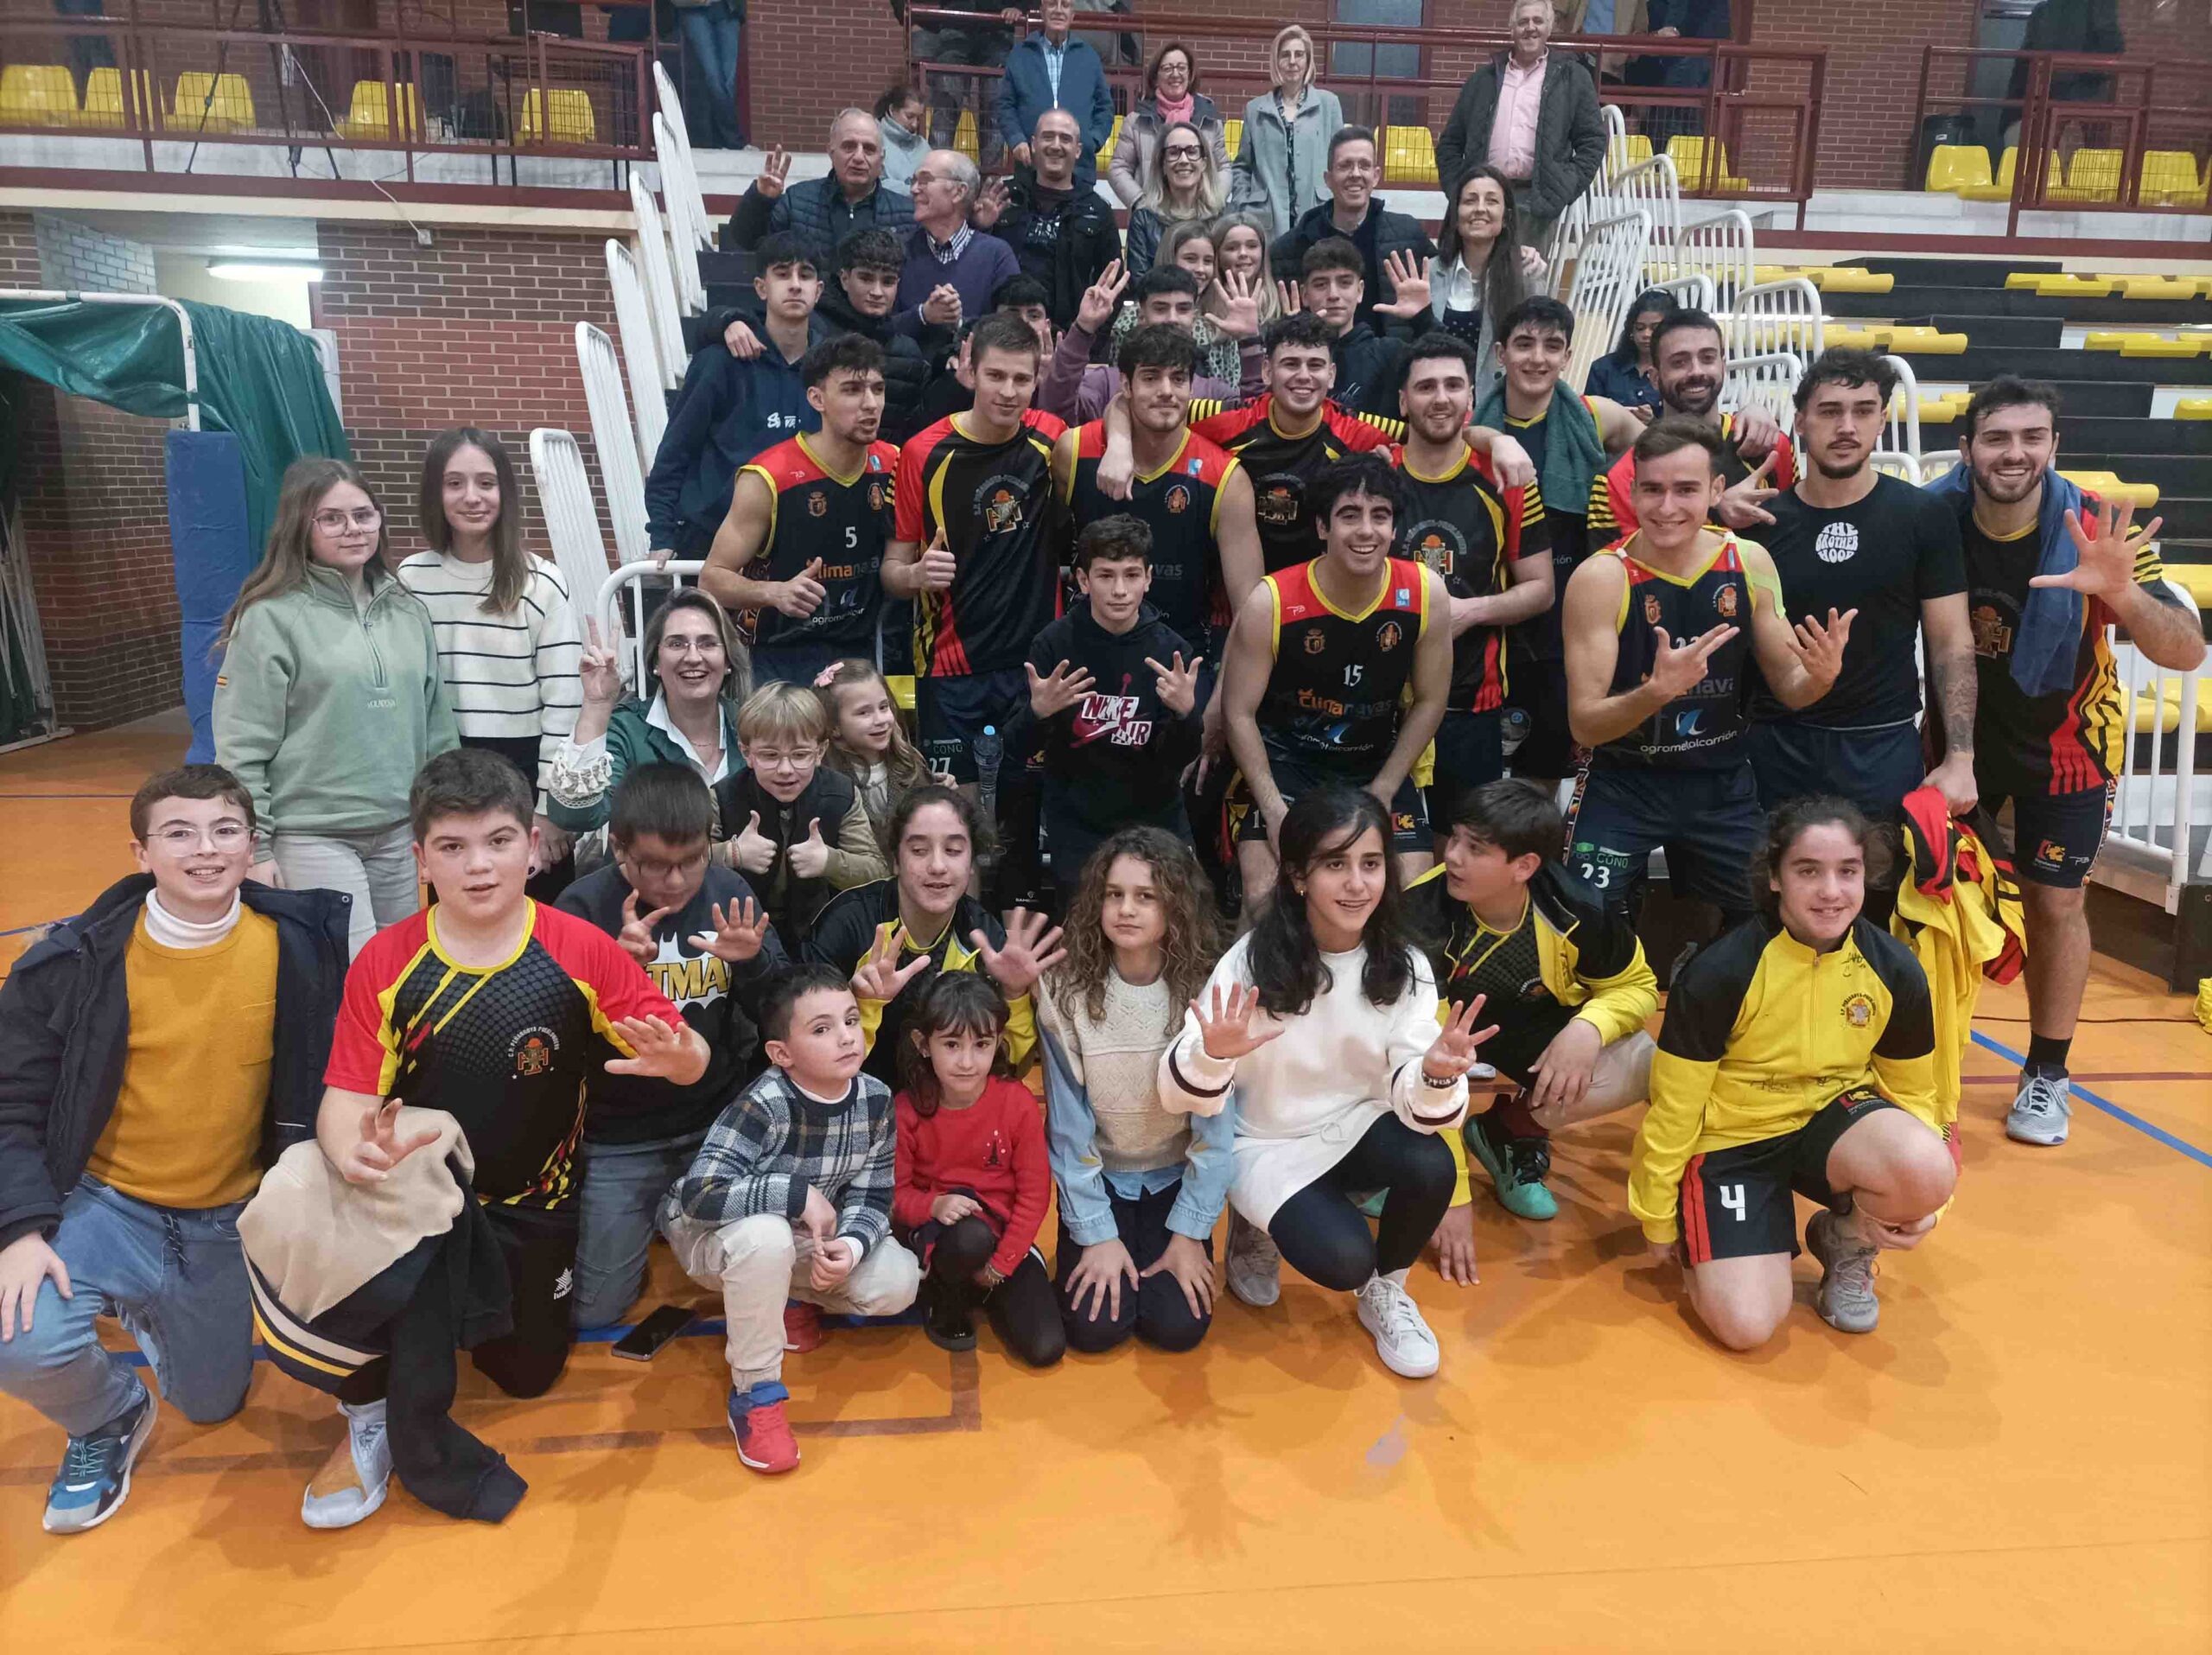 Rotunda victoria del Climanavas Agrometal Peñarroya sobre el CB Cimbis: 97-63 en la jornada 16ª de baloncesto EBA